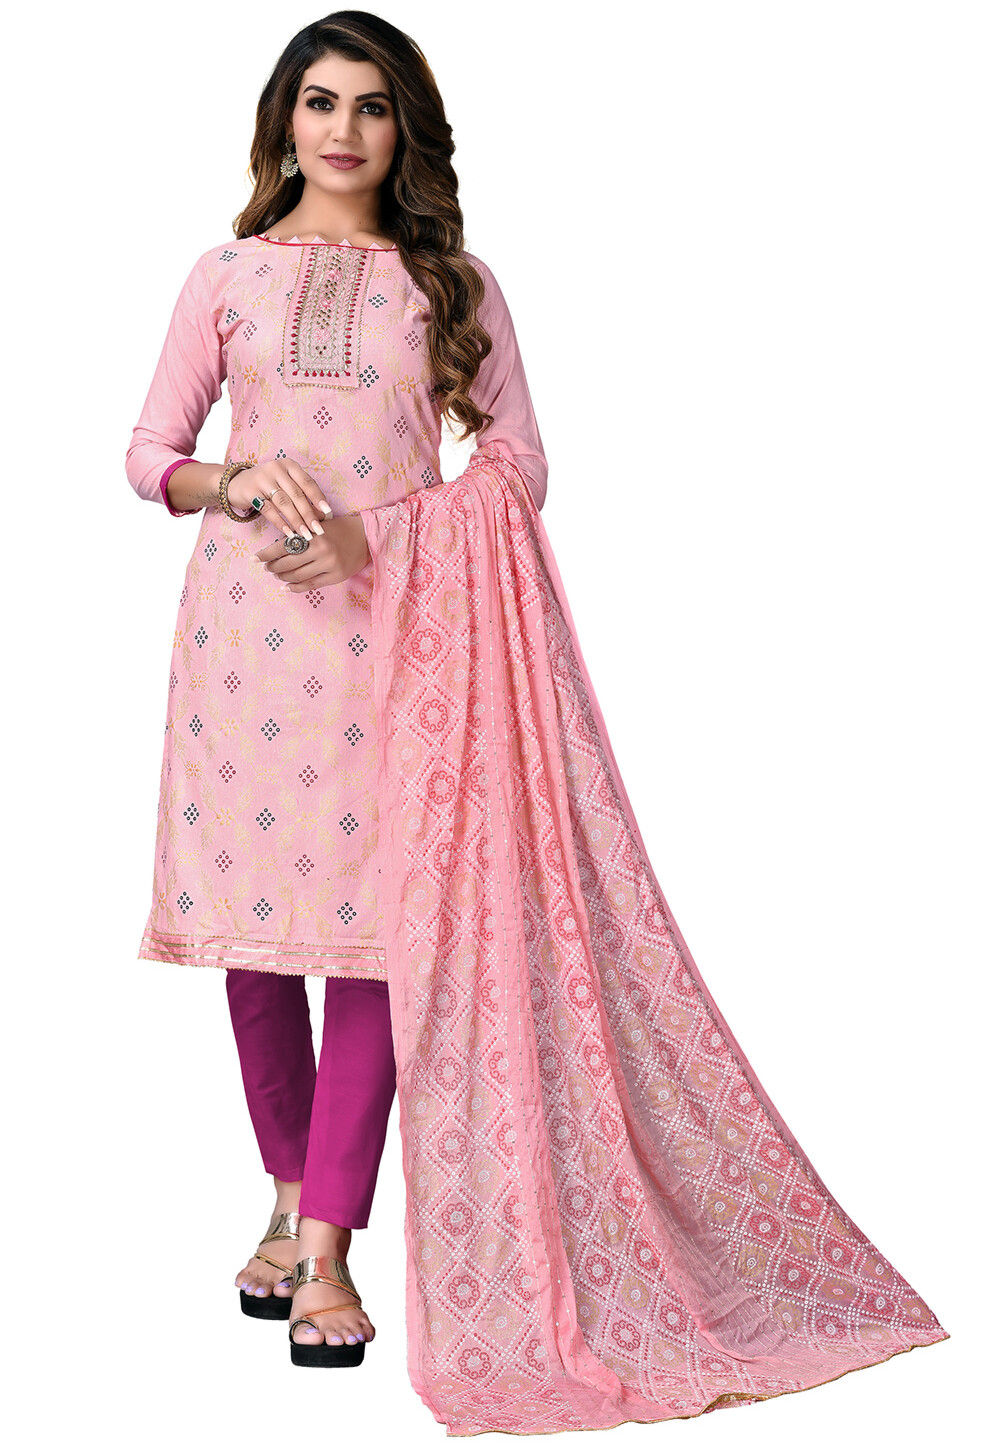 Bandhej Printed Cotton Pakistani Suit in Light Pink : KYE2030